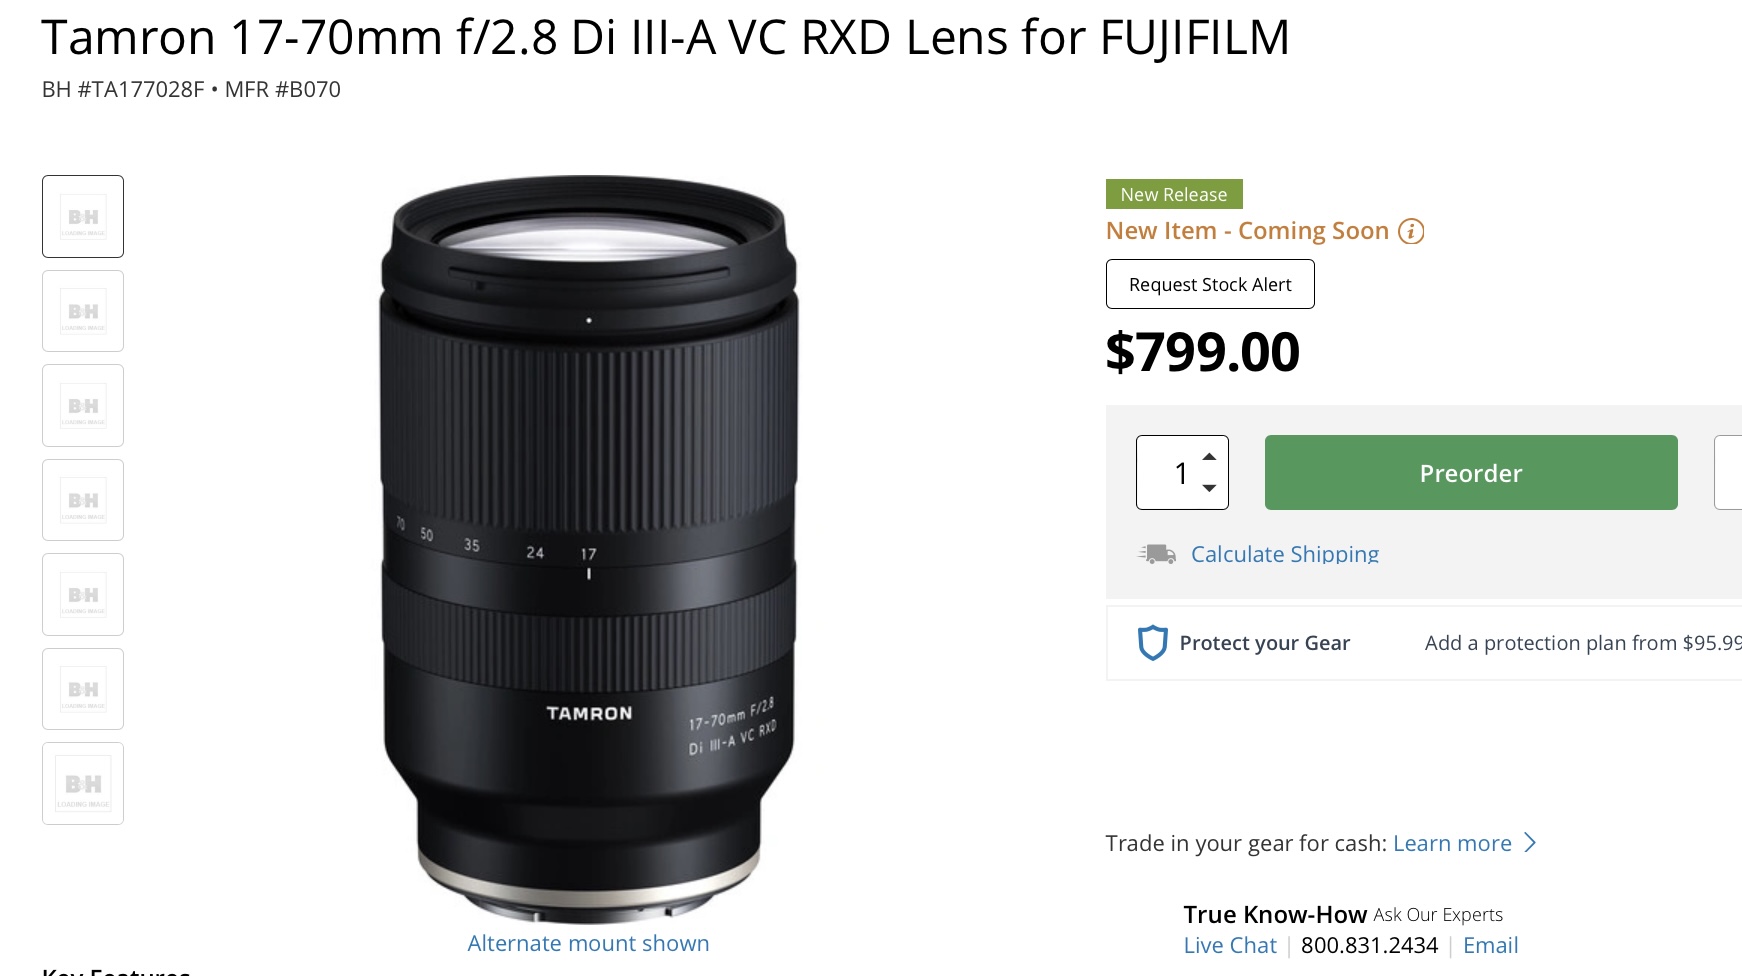 Tamron 17-70mm f/2.8 for Fujifilm X Reviews Roundup - Fuji Rumors